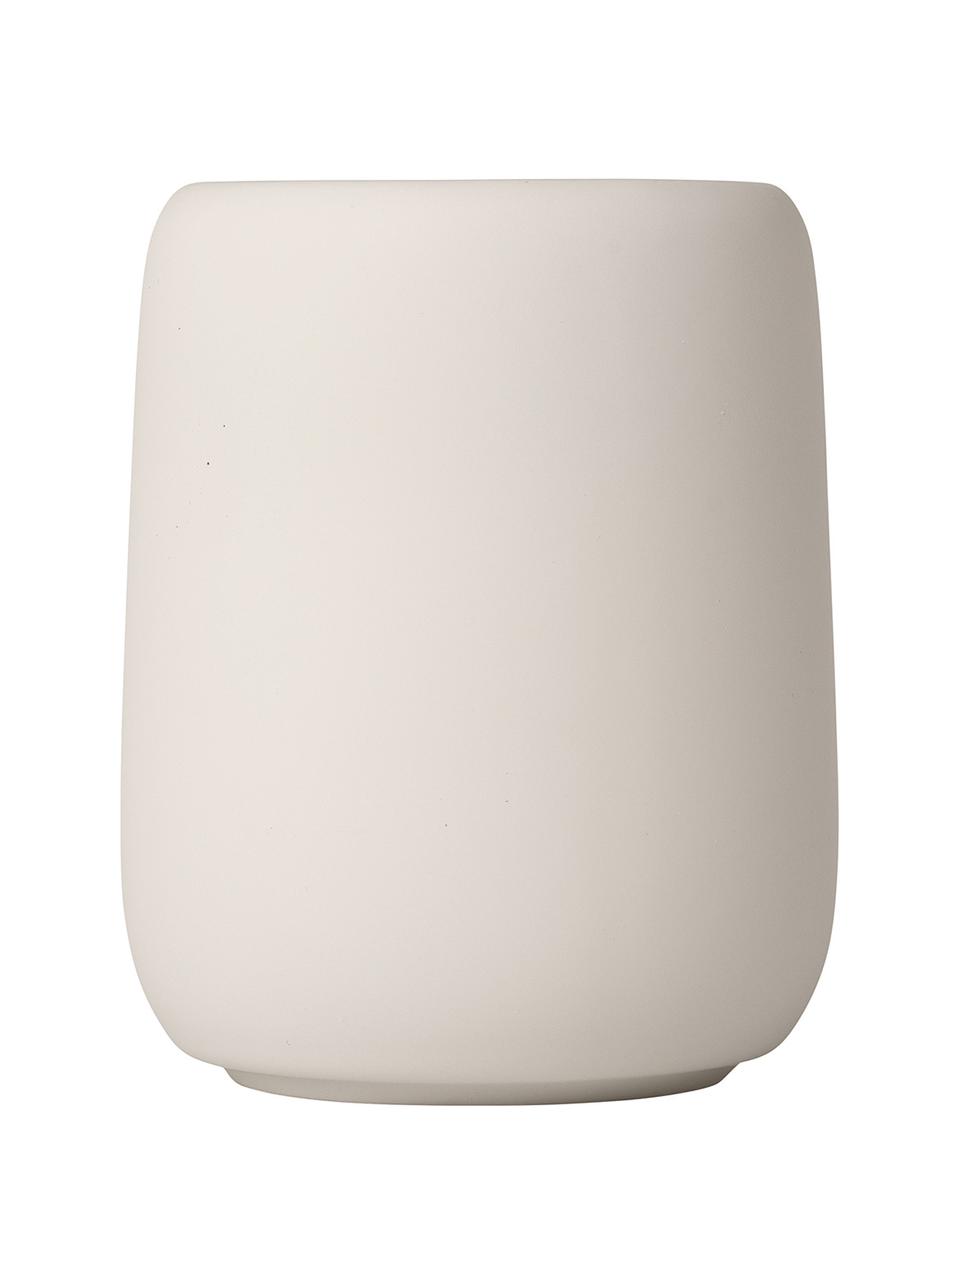 Kubek na szczoteczki z ceramiki Sono, Ceramika, Beżowy, Ø 9 x W 11 cm